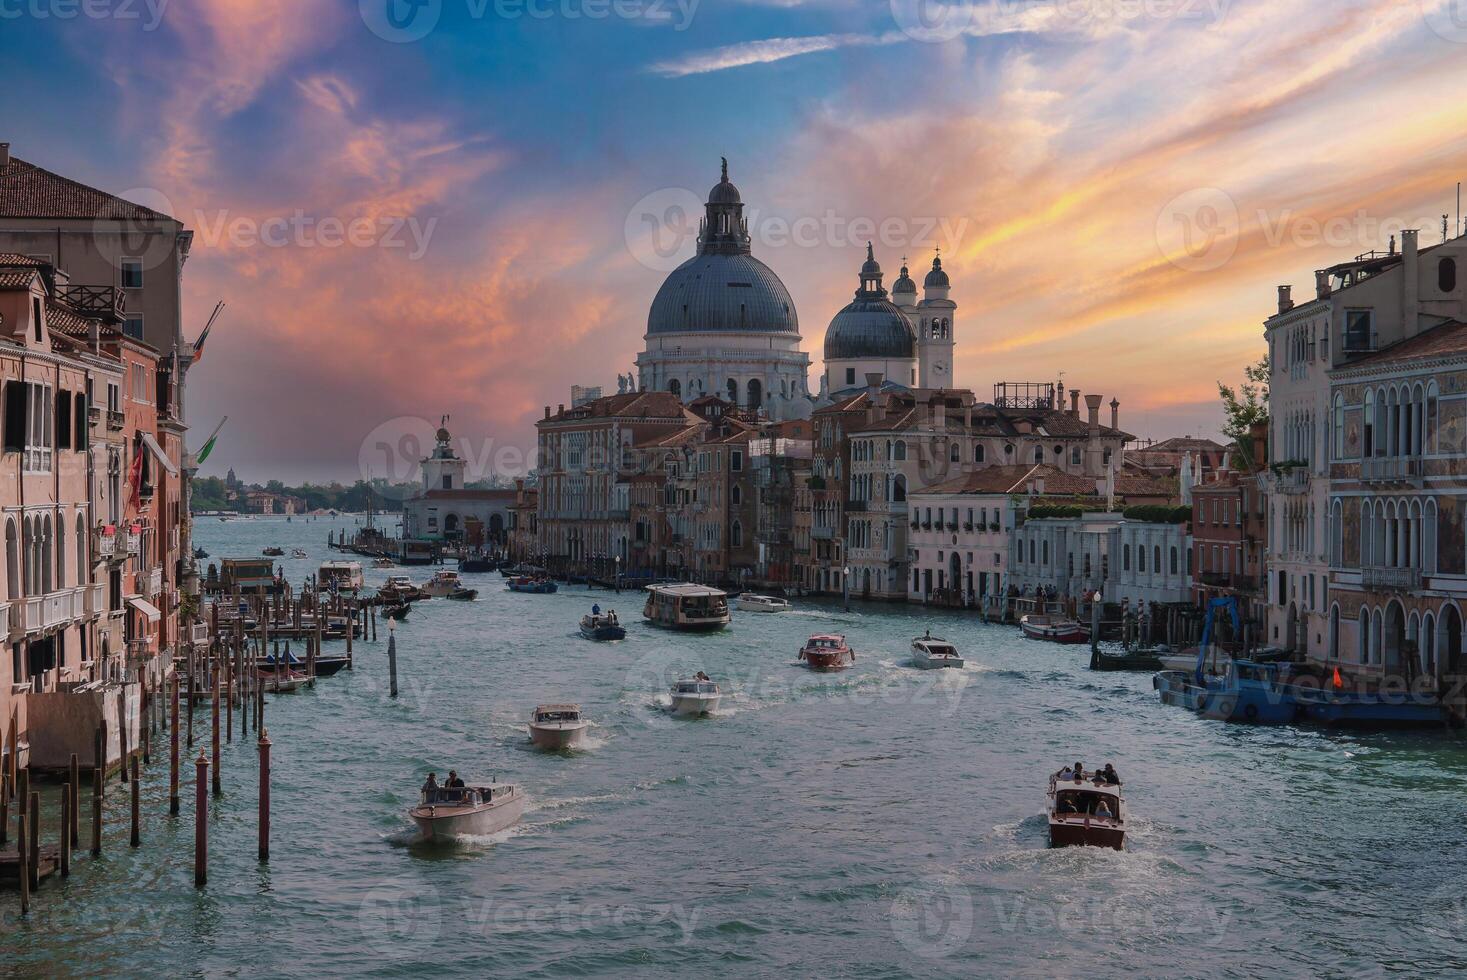 grandioso canal Venecia Italia tarde ver con Renacimiento y barroco arquitectura foto